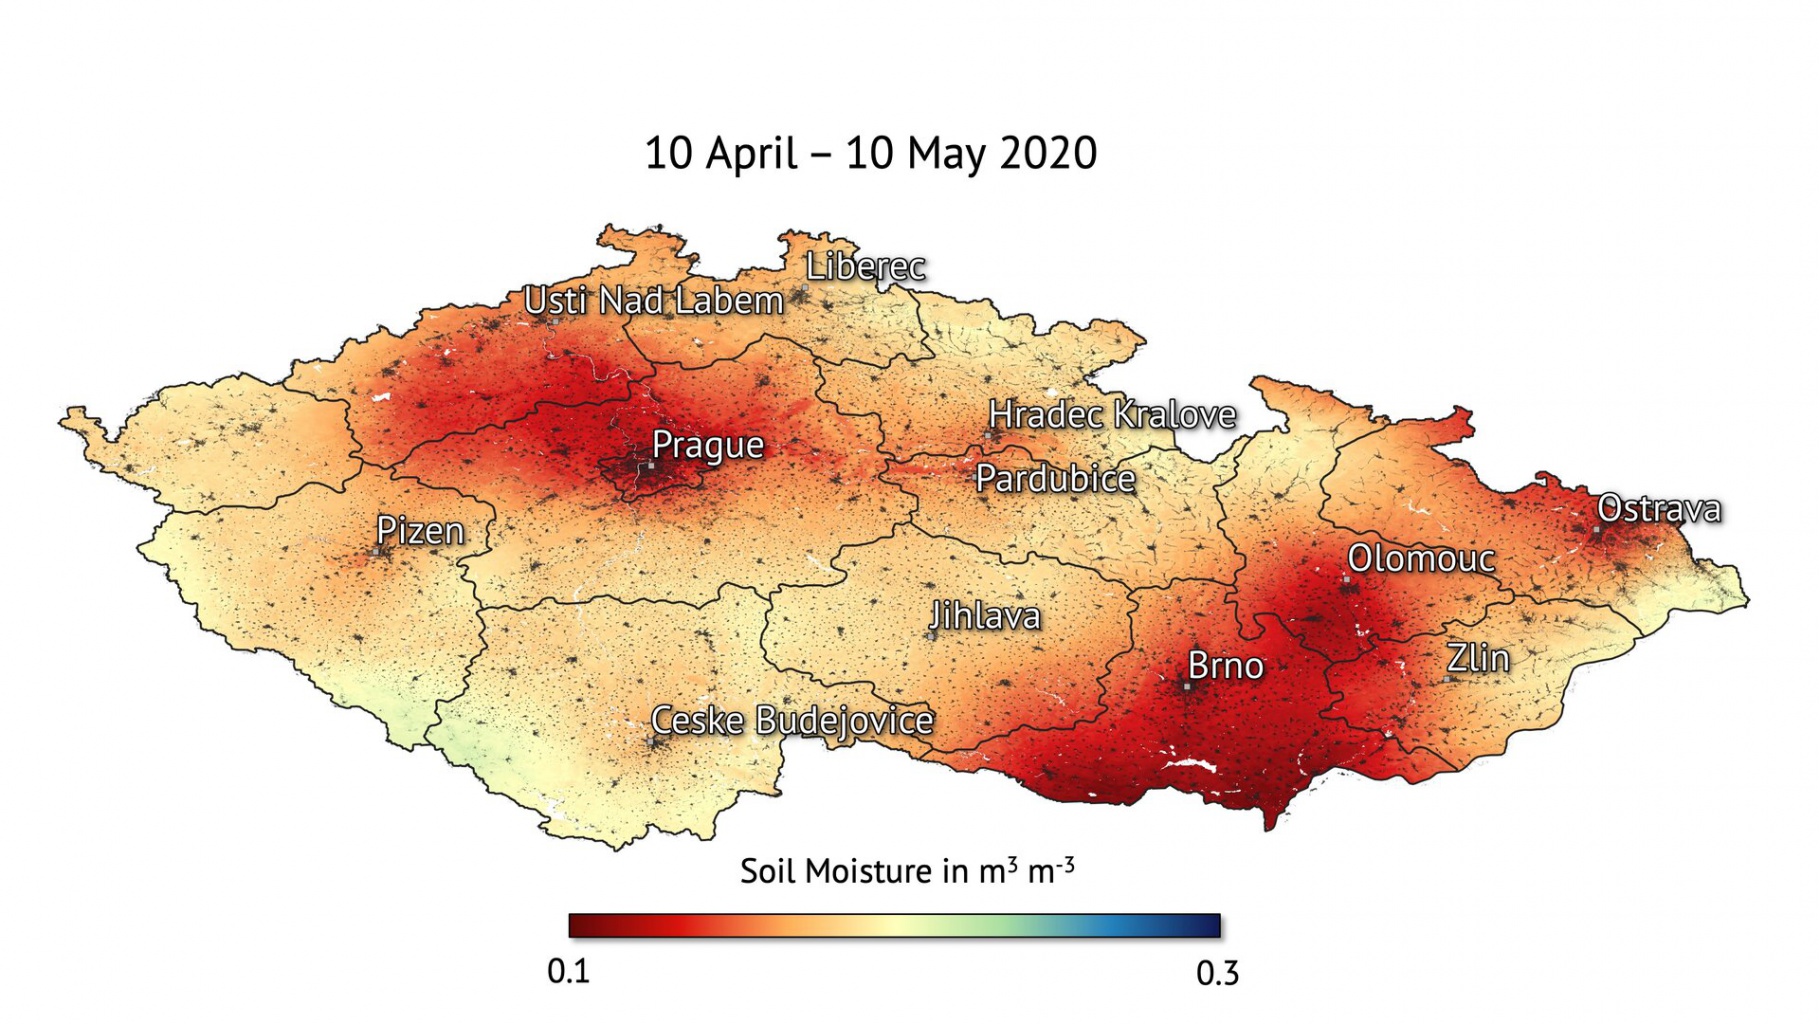 Czech_Republic_soil_moisture_2020_pillars-2.jpg